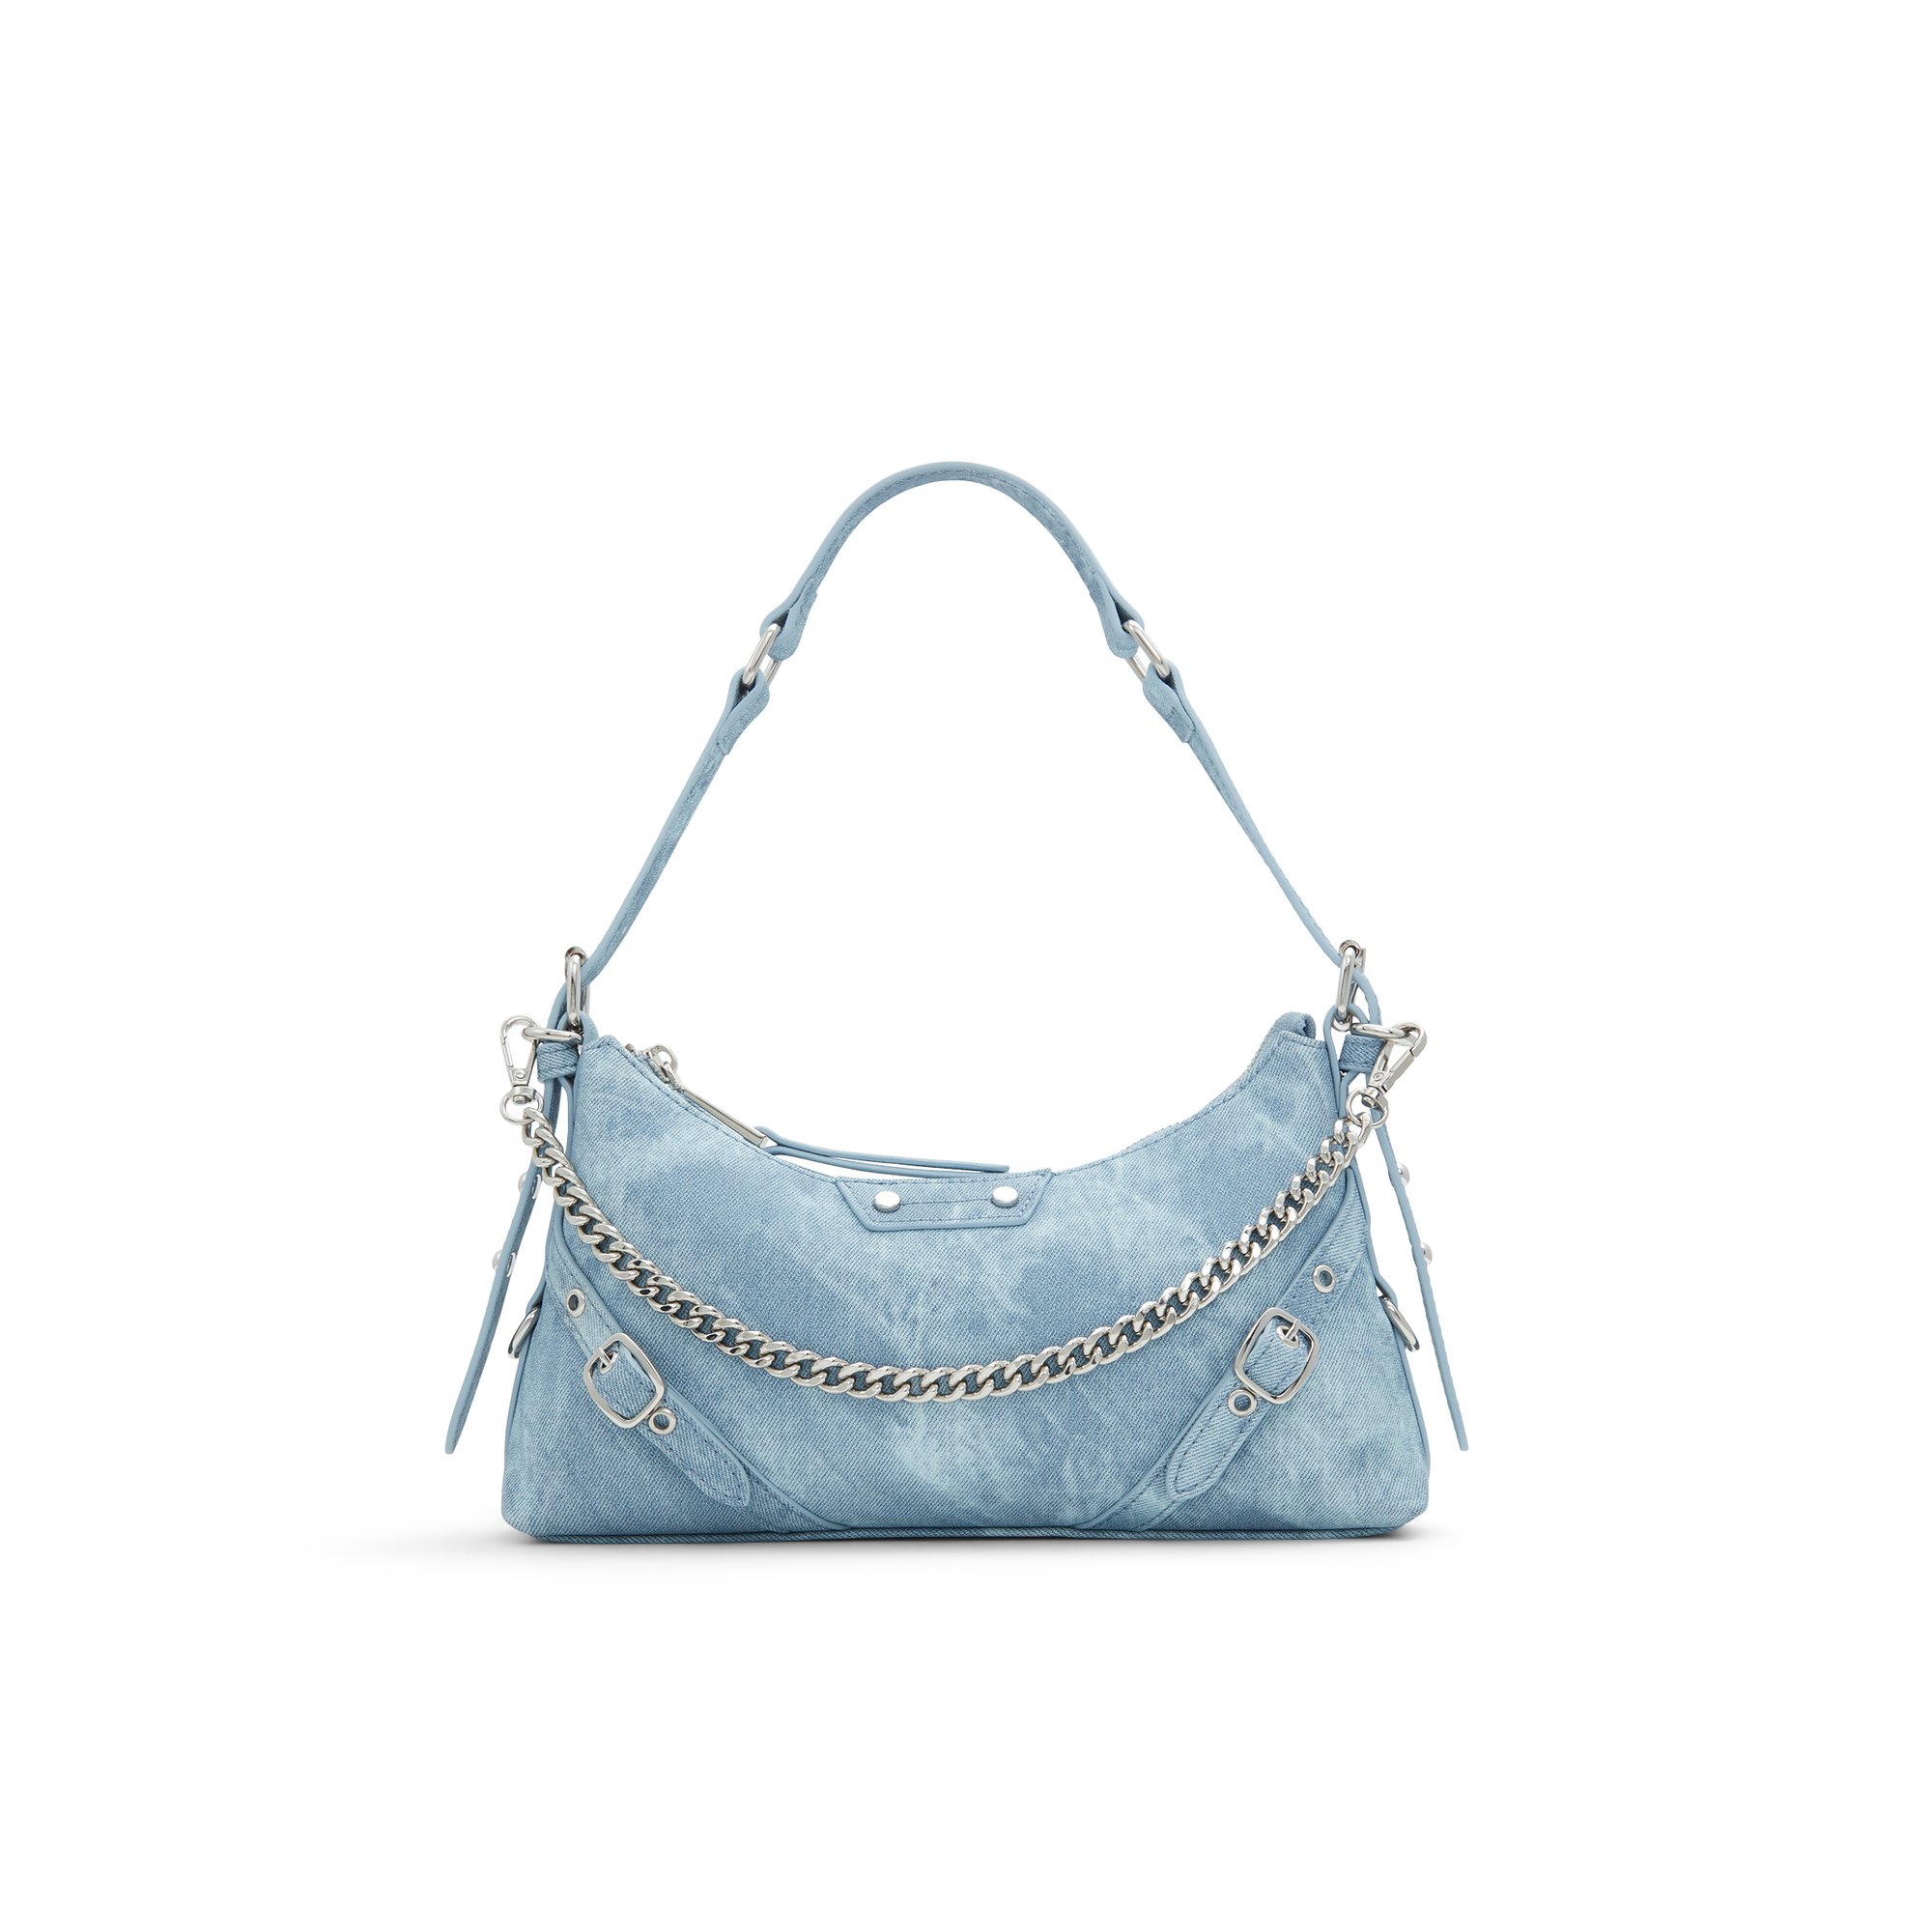 ALDO Faralaeliax - Women's Shoulder Bag Handbag - Blue